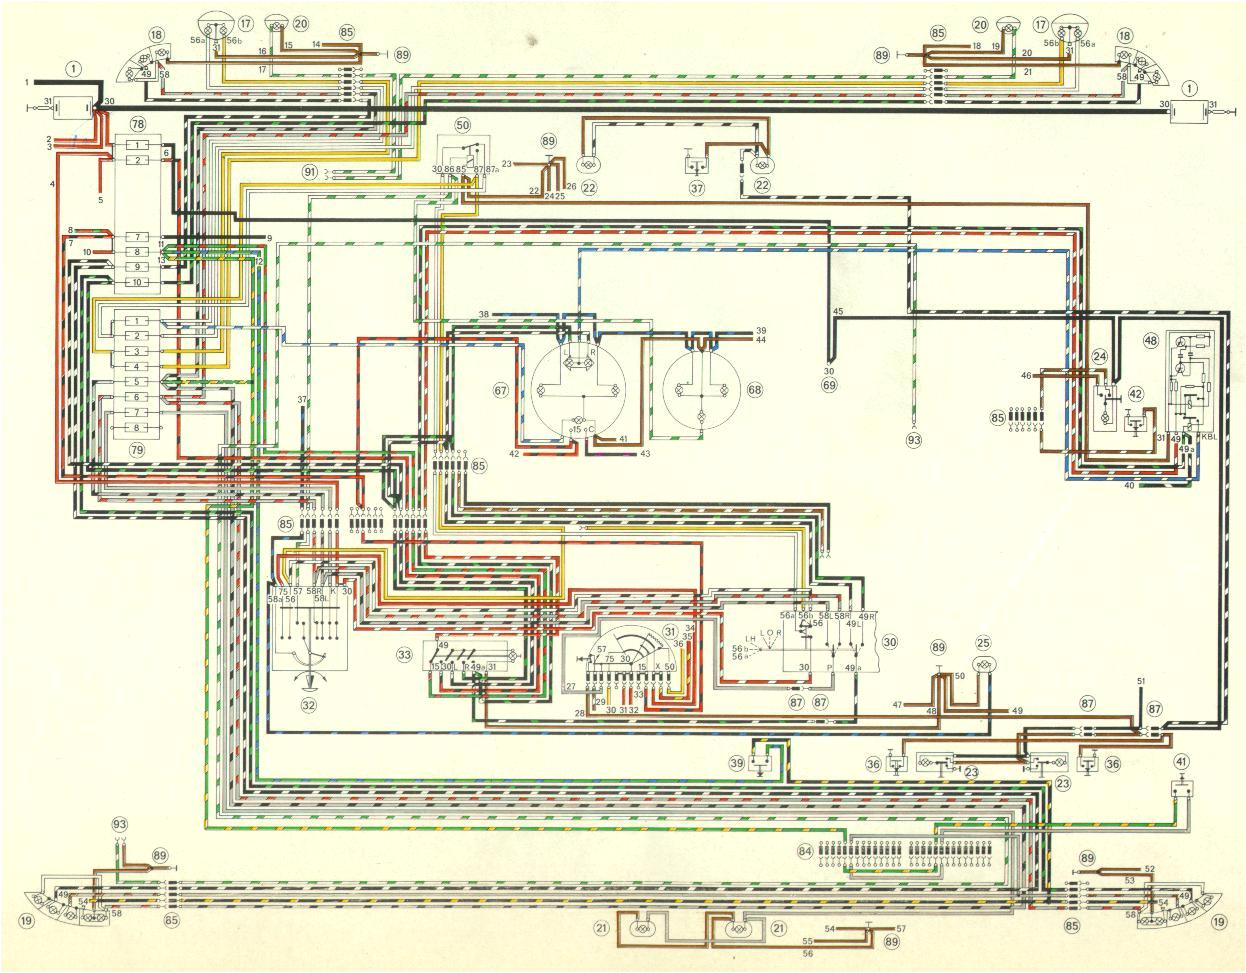 1986 porsche 911 wiring diagrams somurich com 1972 volkswagen wiring diagram 1986 porsche 911 wiring diagrams